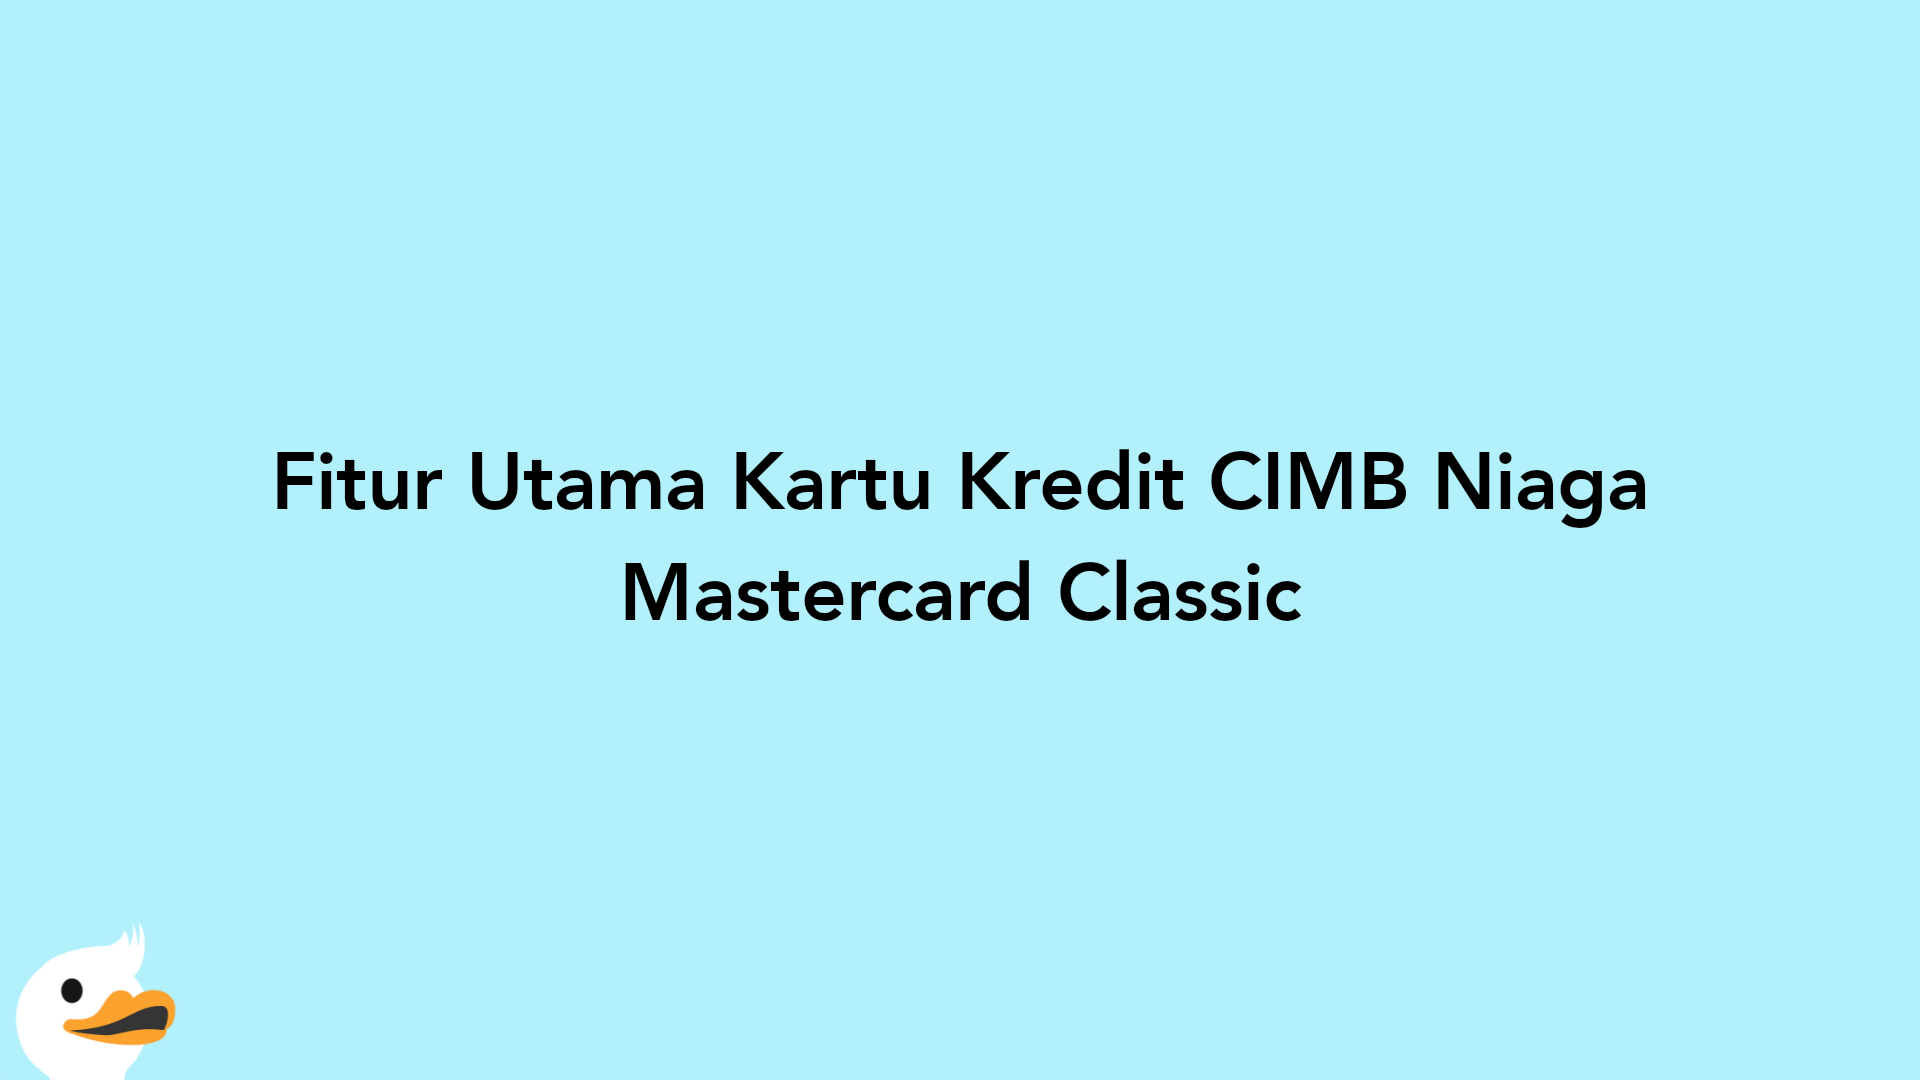 Fitur Utama Kartu Kredit CIMB Niaga Mastercard Classic